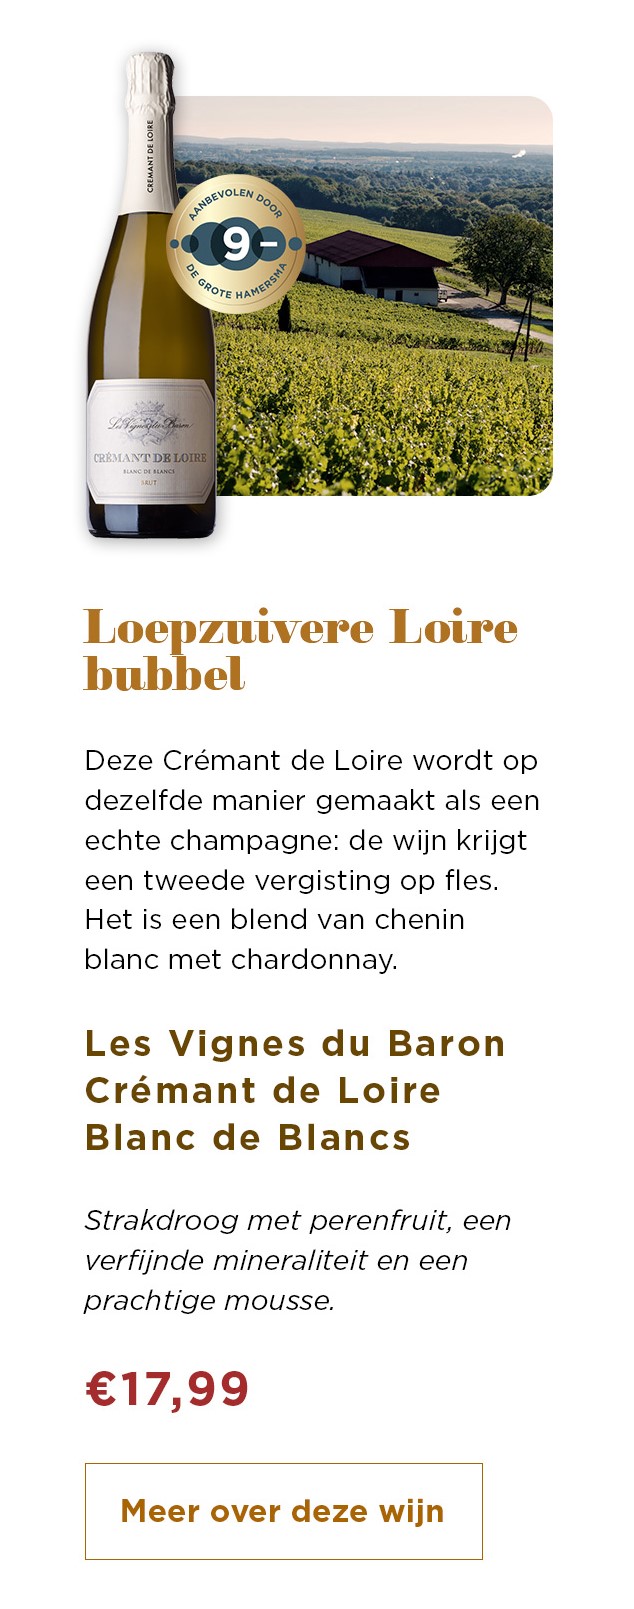 Loepzuivere Loire bubbel | Les Vignes du Baron Cremant de Loire Blanc de Blancs voor € 17,99 | Meer over deze wijn